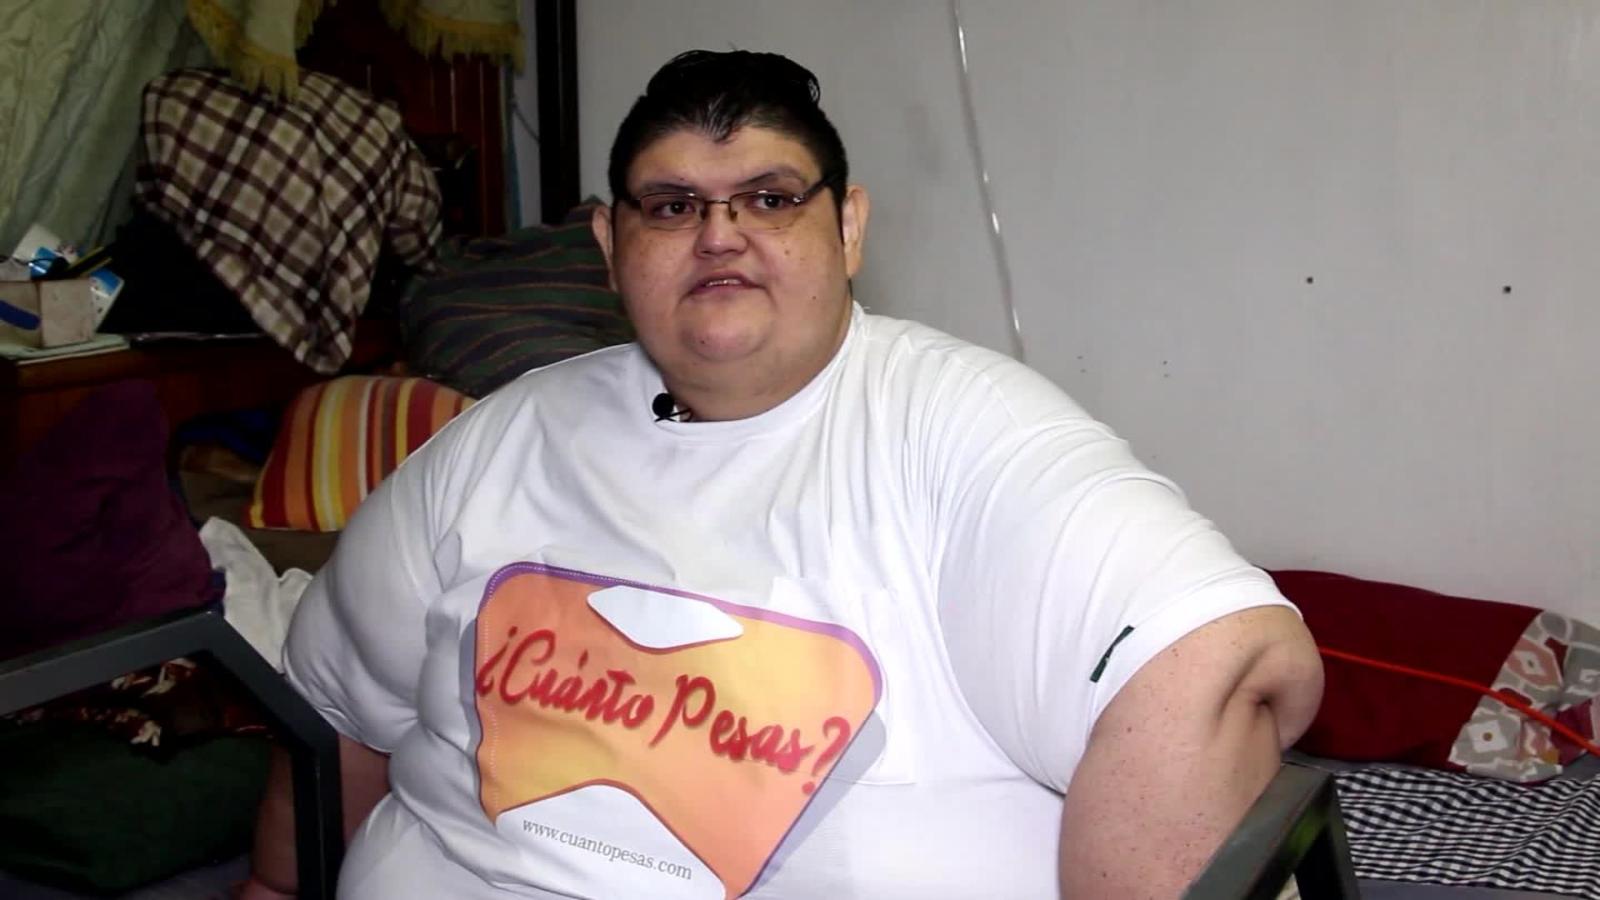 Juan Pedro Franco, una vez que el hombre más obeso del mundo, continúa